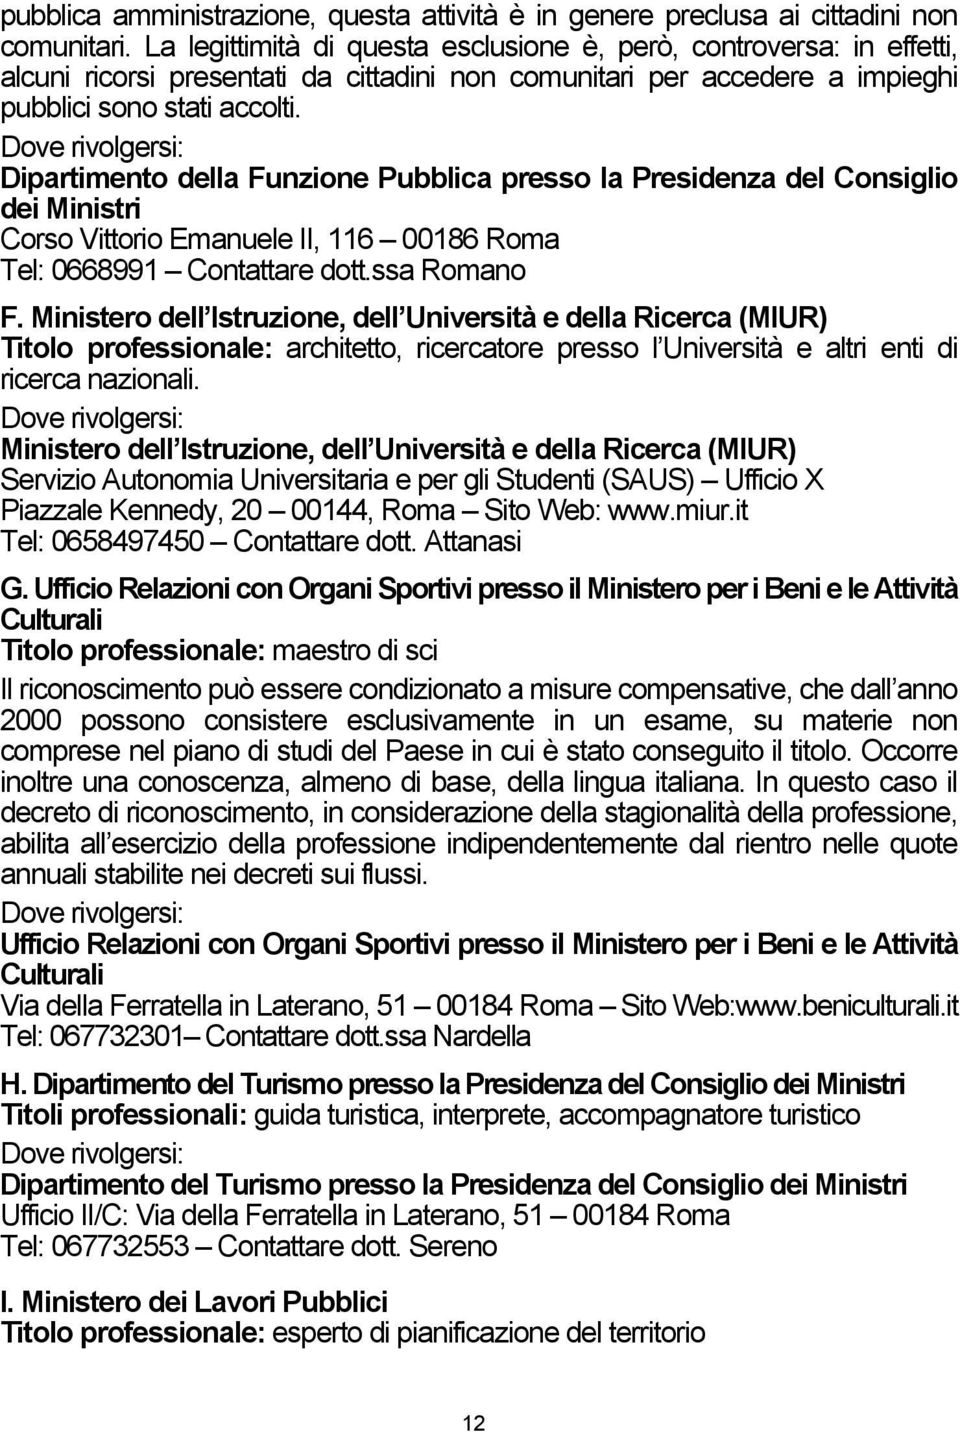 Dipartimento della Funzione Pubblica presso la Presidenza del Consiglio dei Ministri Corso Vittorio Emanuele II, 116 00186 Roma Tel: 0668991 Contattare dott.ssa Romano F.